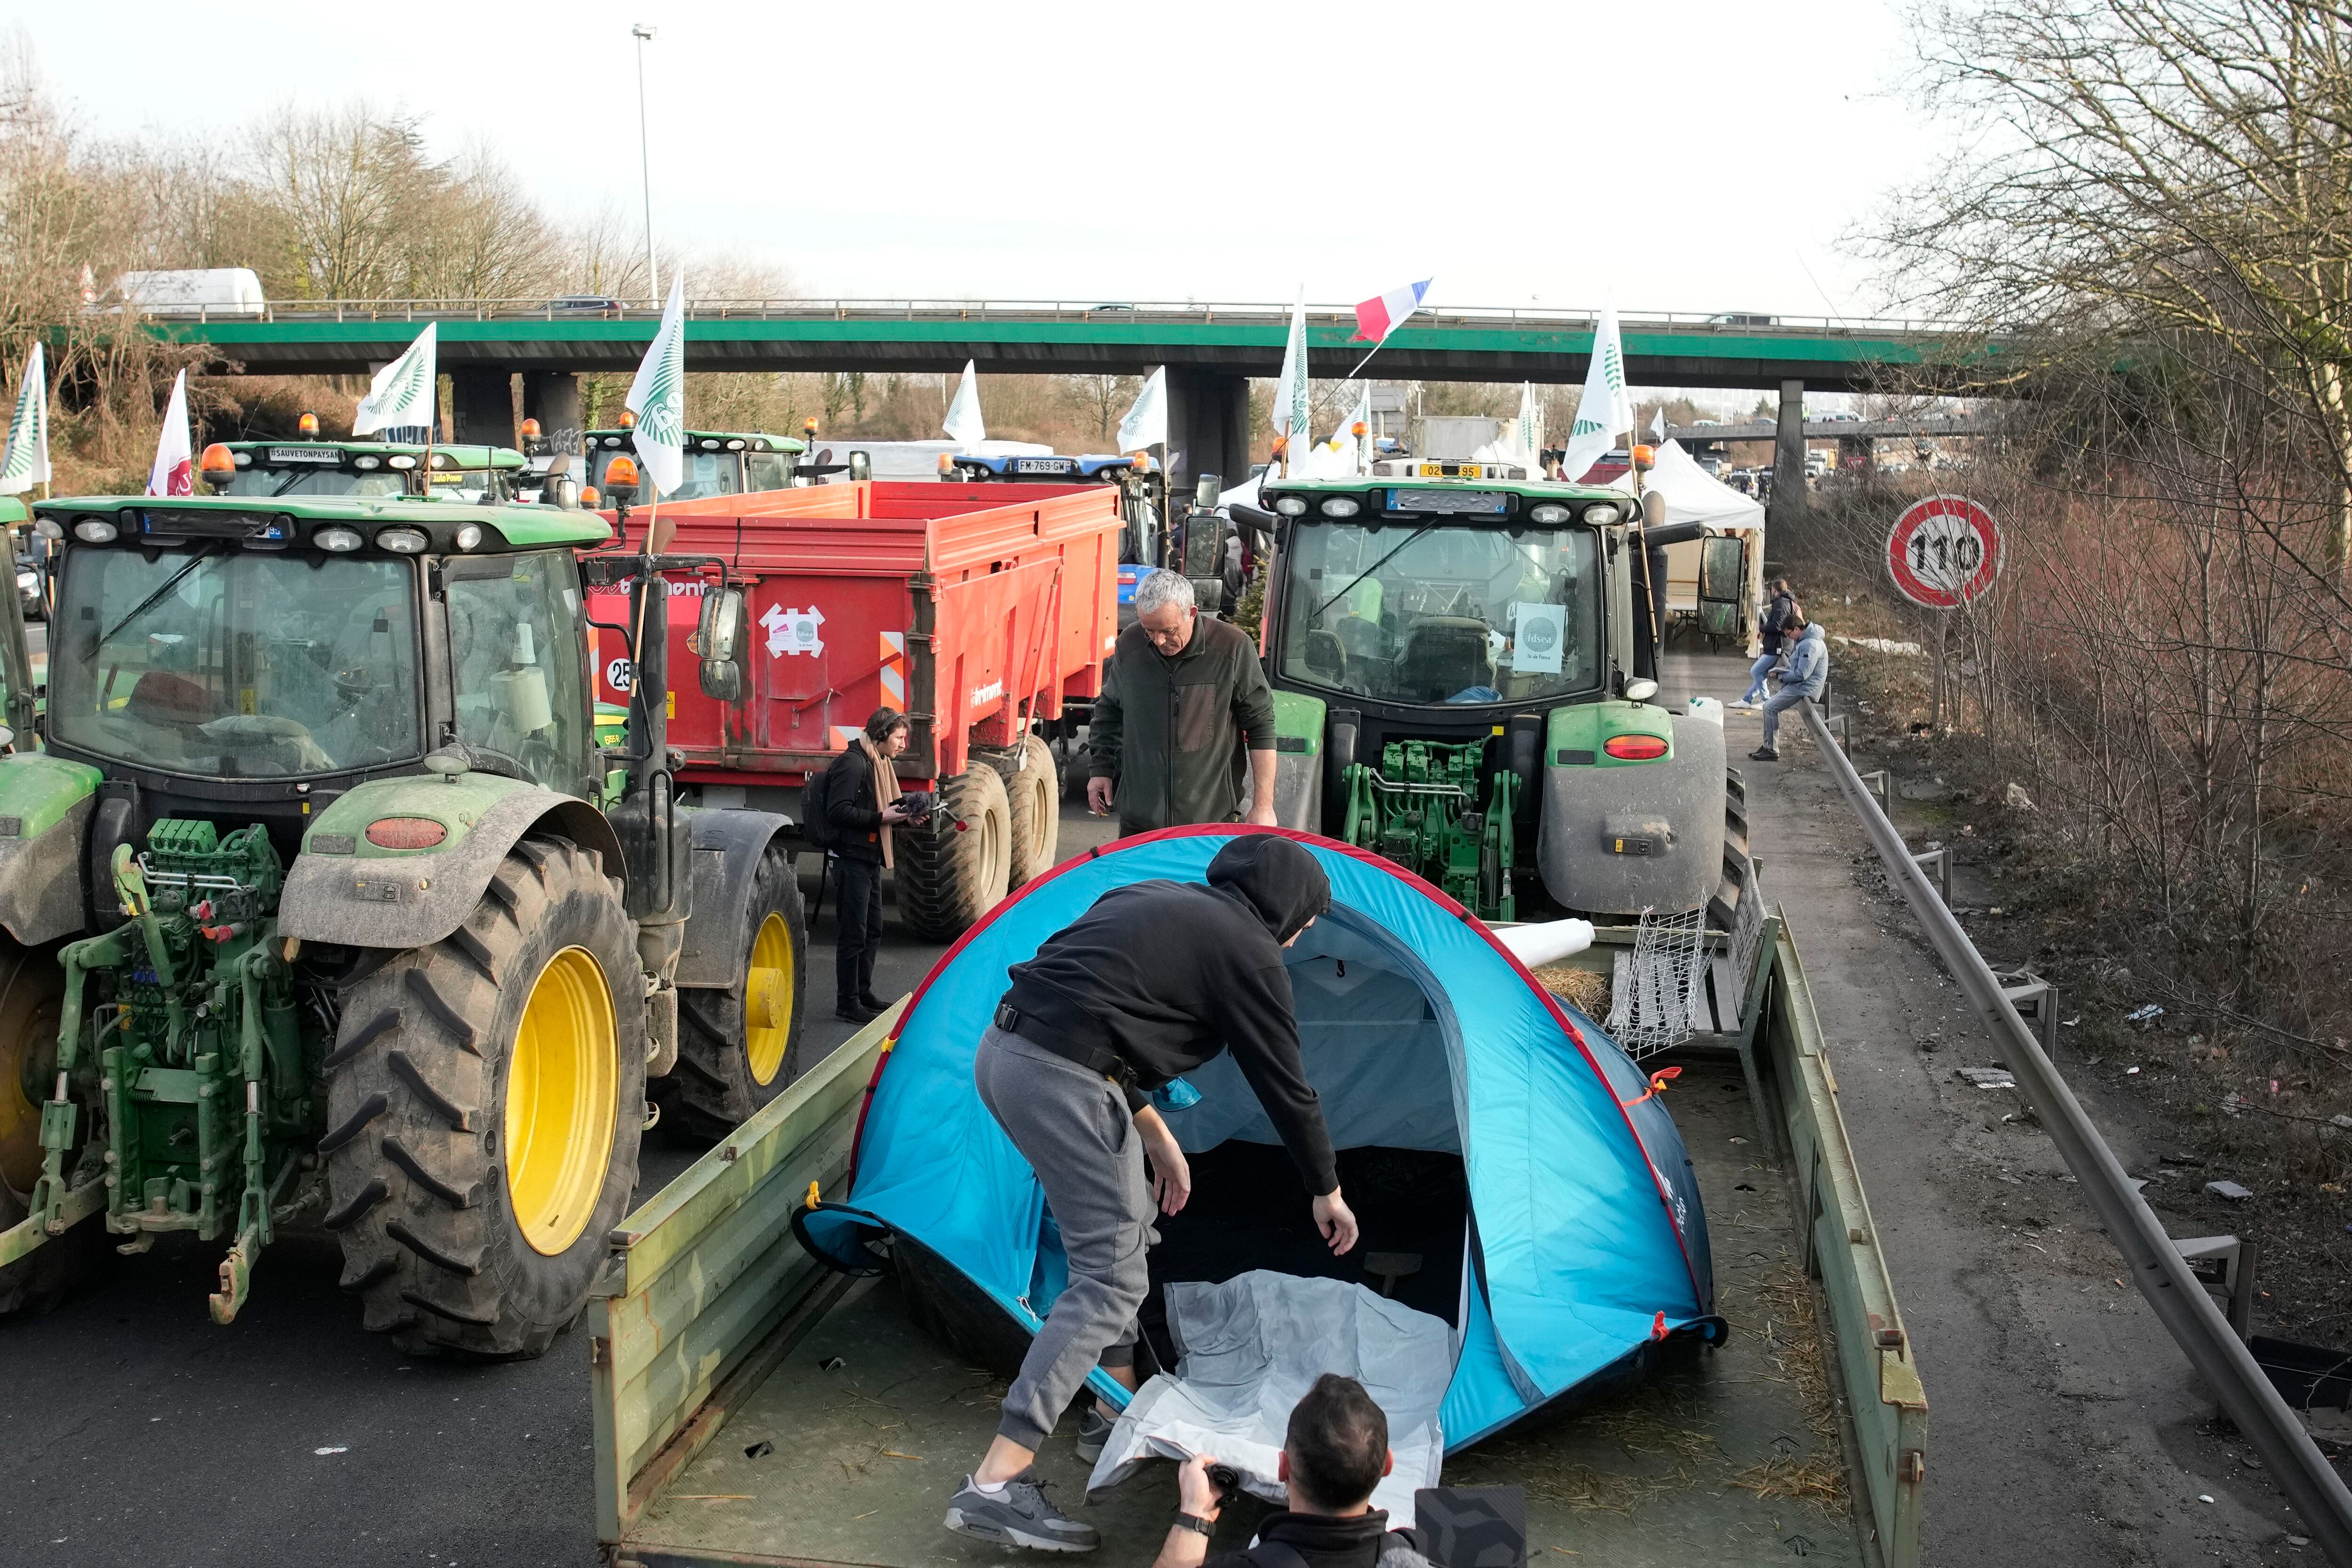 Un agricultor monta una tienda de campaña sobre el remolque de su tractor en una autopista, al norte de París. 